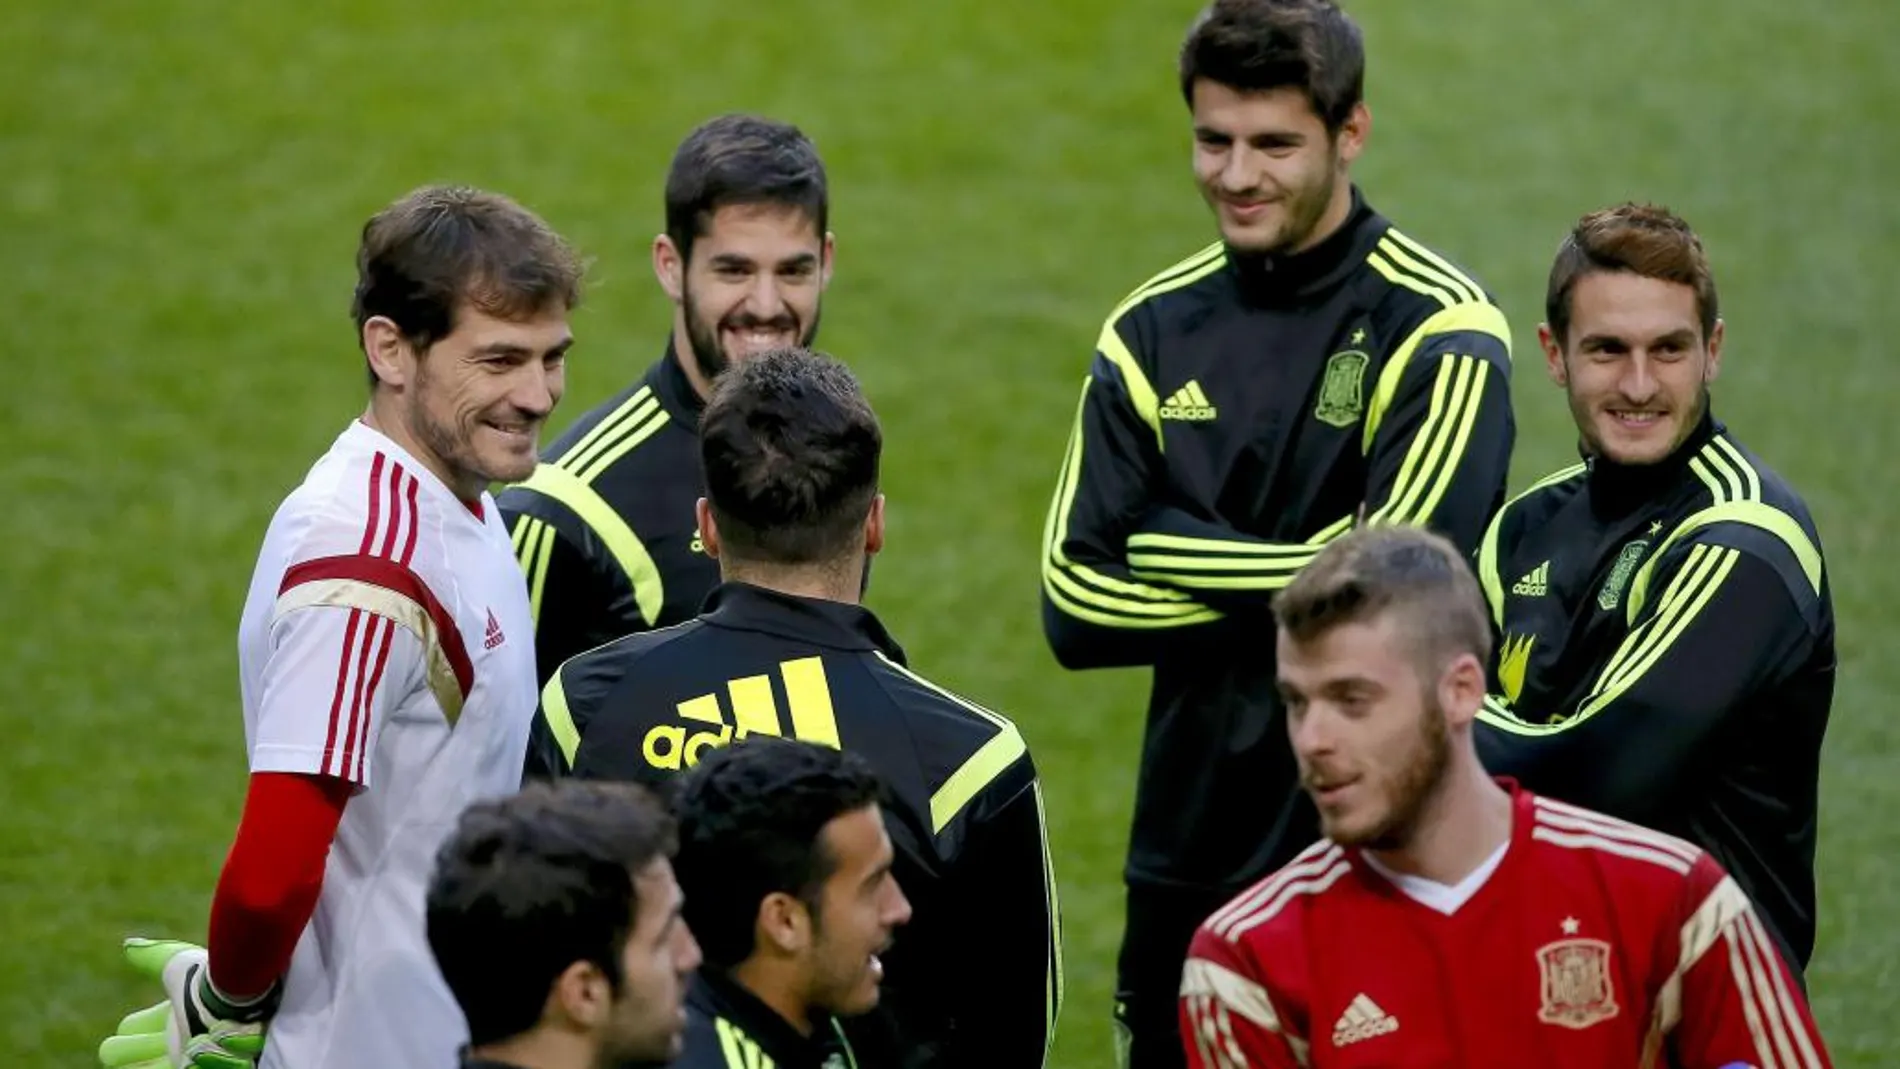 Los jugadores de la selección española Iker Casillas (i), "Isco"Alarcón (2i), Álvaro Morata (2d) y "Koke"Resurrección (d) durante el entrenamiento